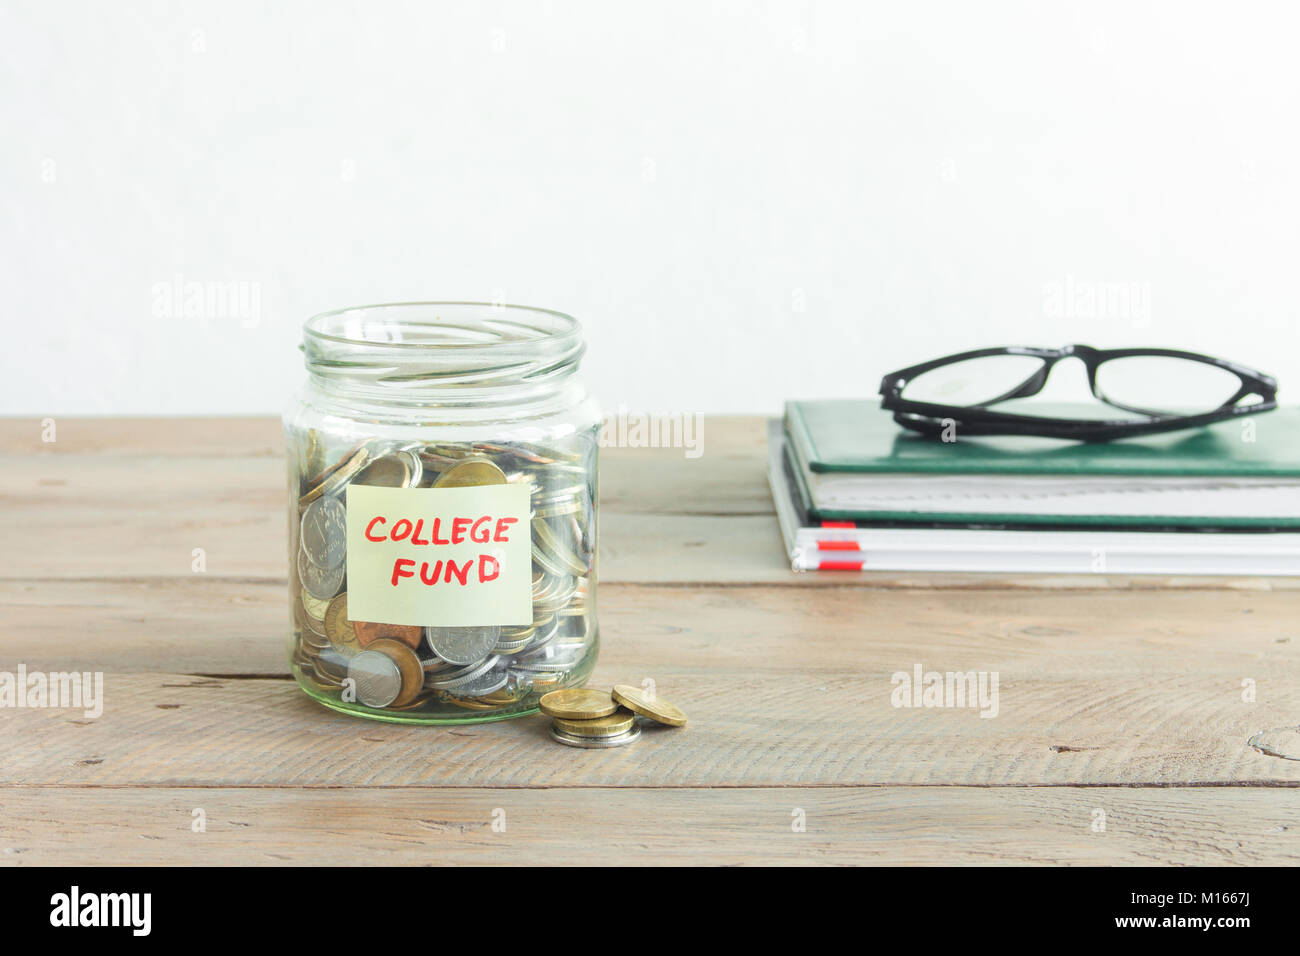 Münzen in Glas Glas mit College Fund label. Kosteneinsparungen, Bildung oder College Fund, planen und träumen Konzept, kopieren. Stockfoto